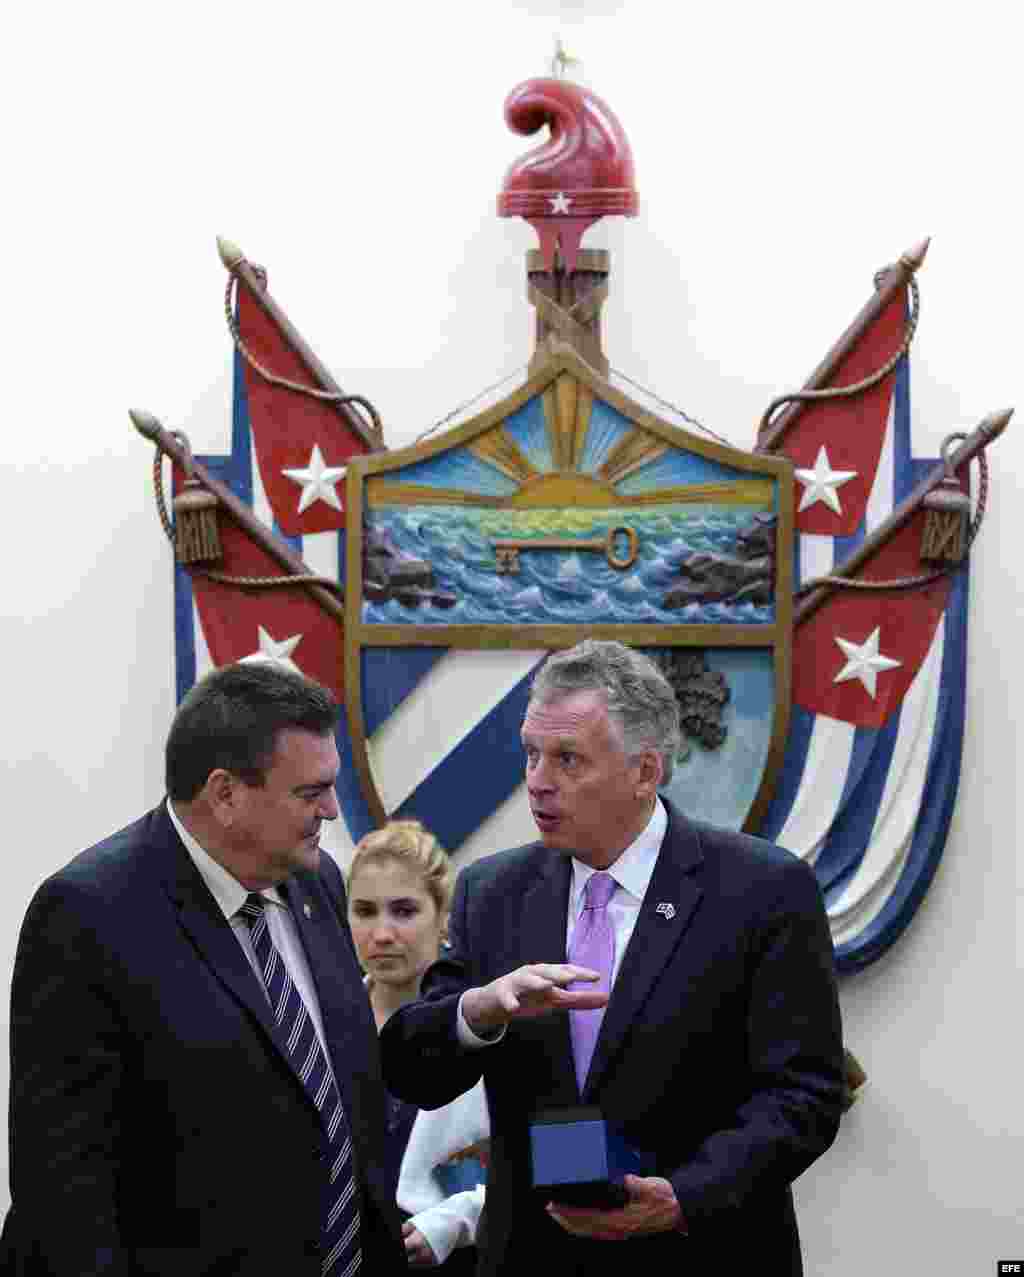  El gobernador del estado de Virginia (EEUU), Terry McAuliffe (d), conversa con el rector de la Universidad de La Habana (Cuba), Gustavo Cobreiro Suárez (i), durante una visita hoy, lunes 04 de enero de 2016, en La Habana.